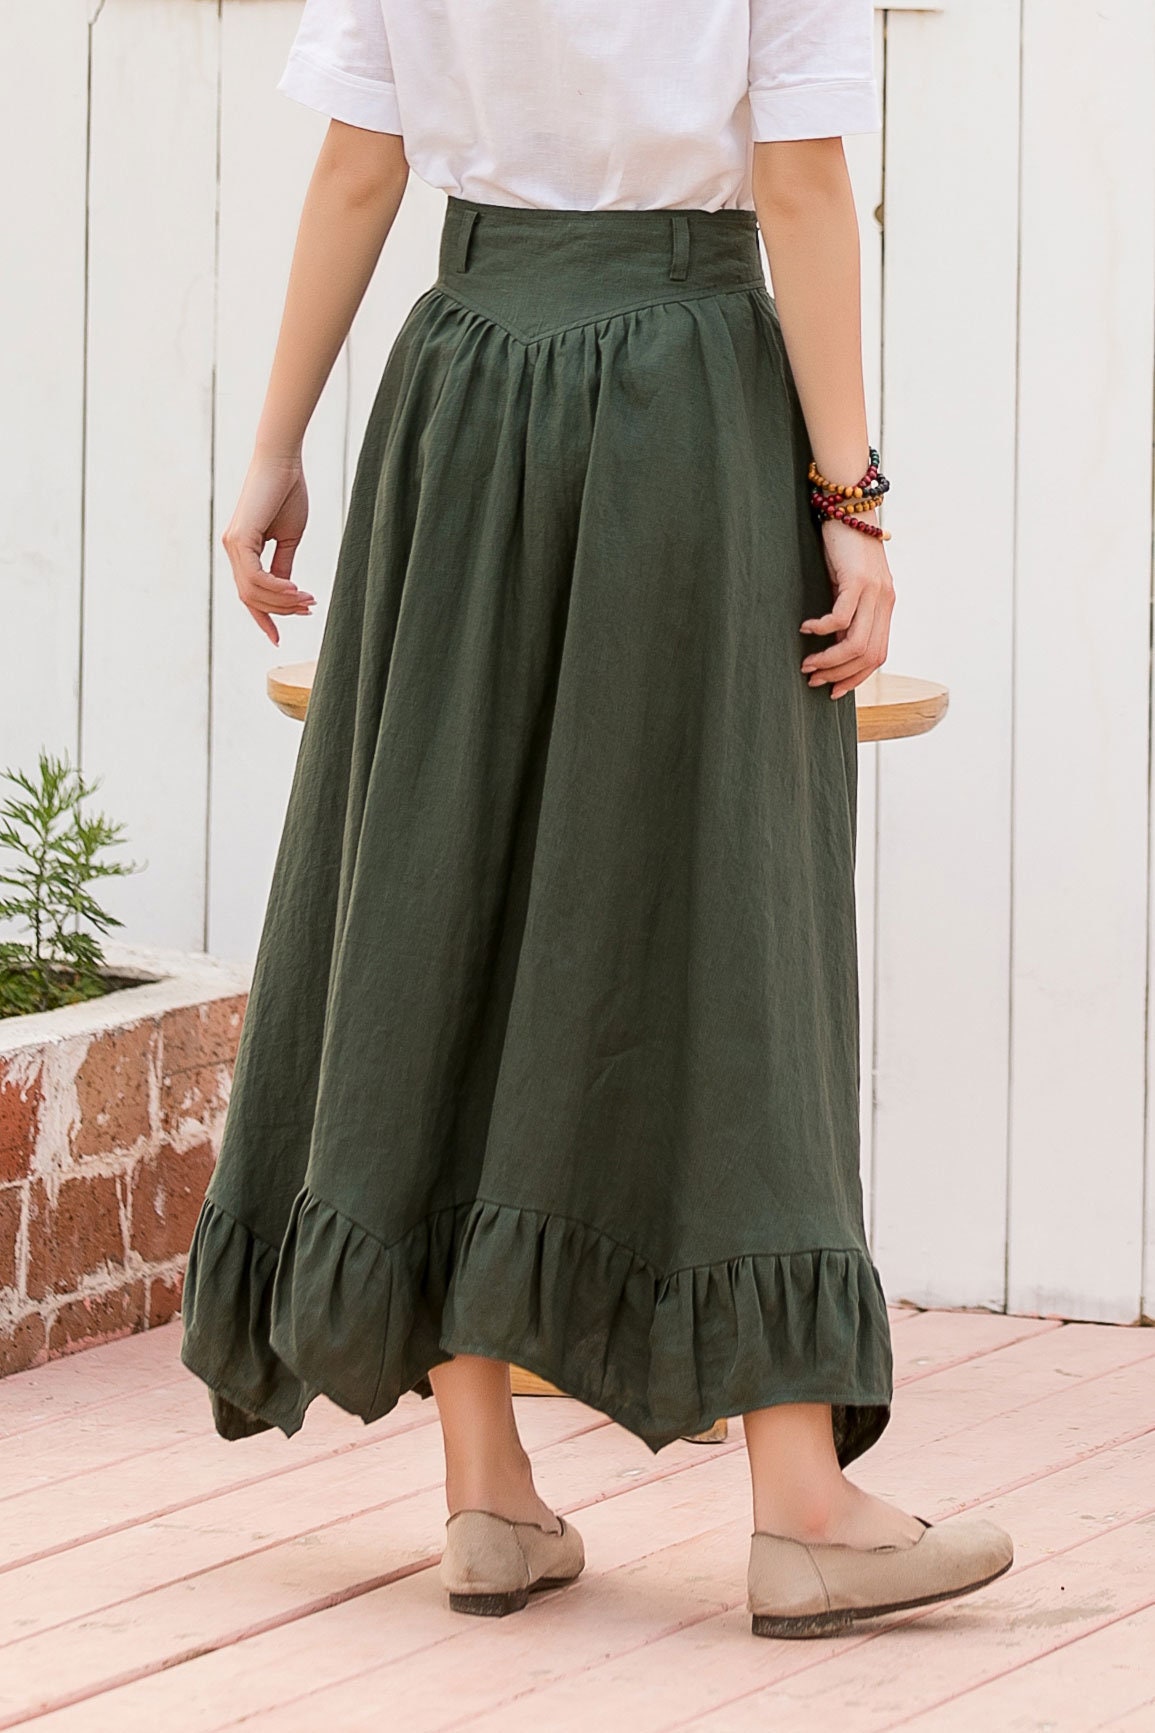 Linen Skirt Linen Skirt Plus Size Long Skirt High Waisted | Etsy